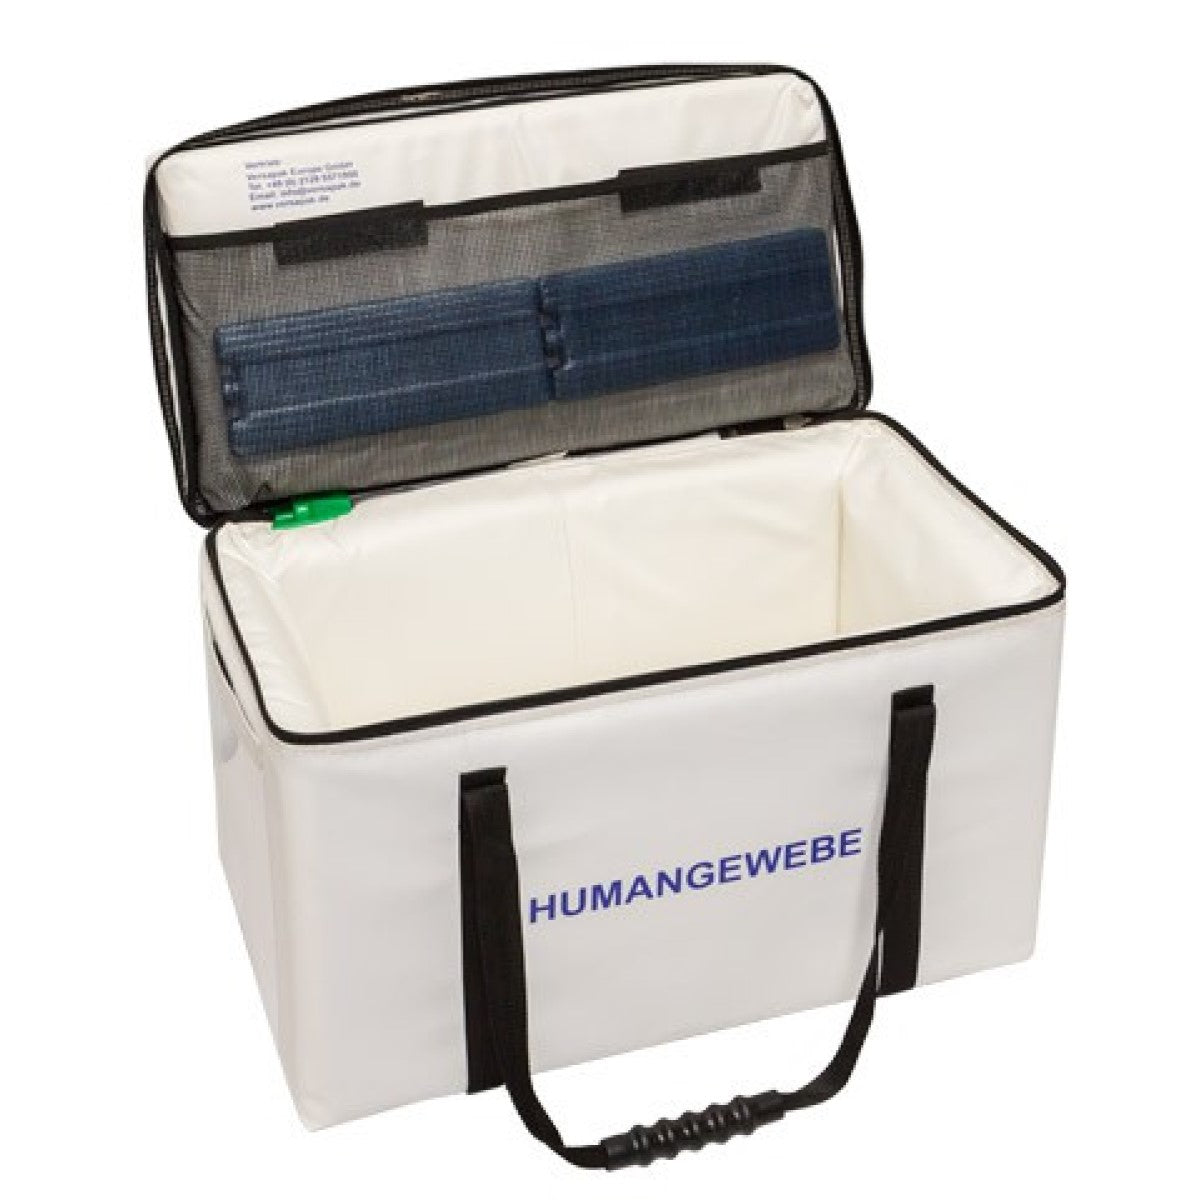 Labortasche für den Transport von Humangewebe, Amputate oder Organe - Offen